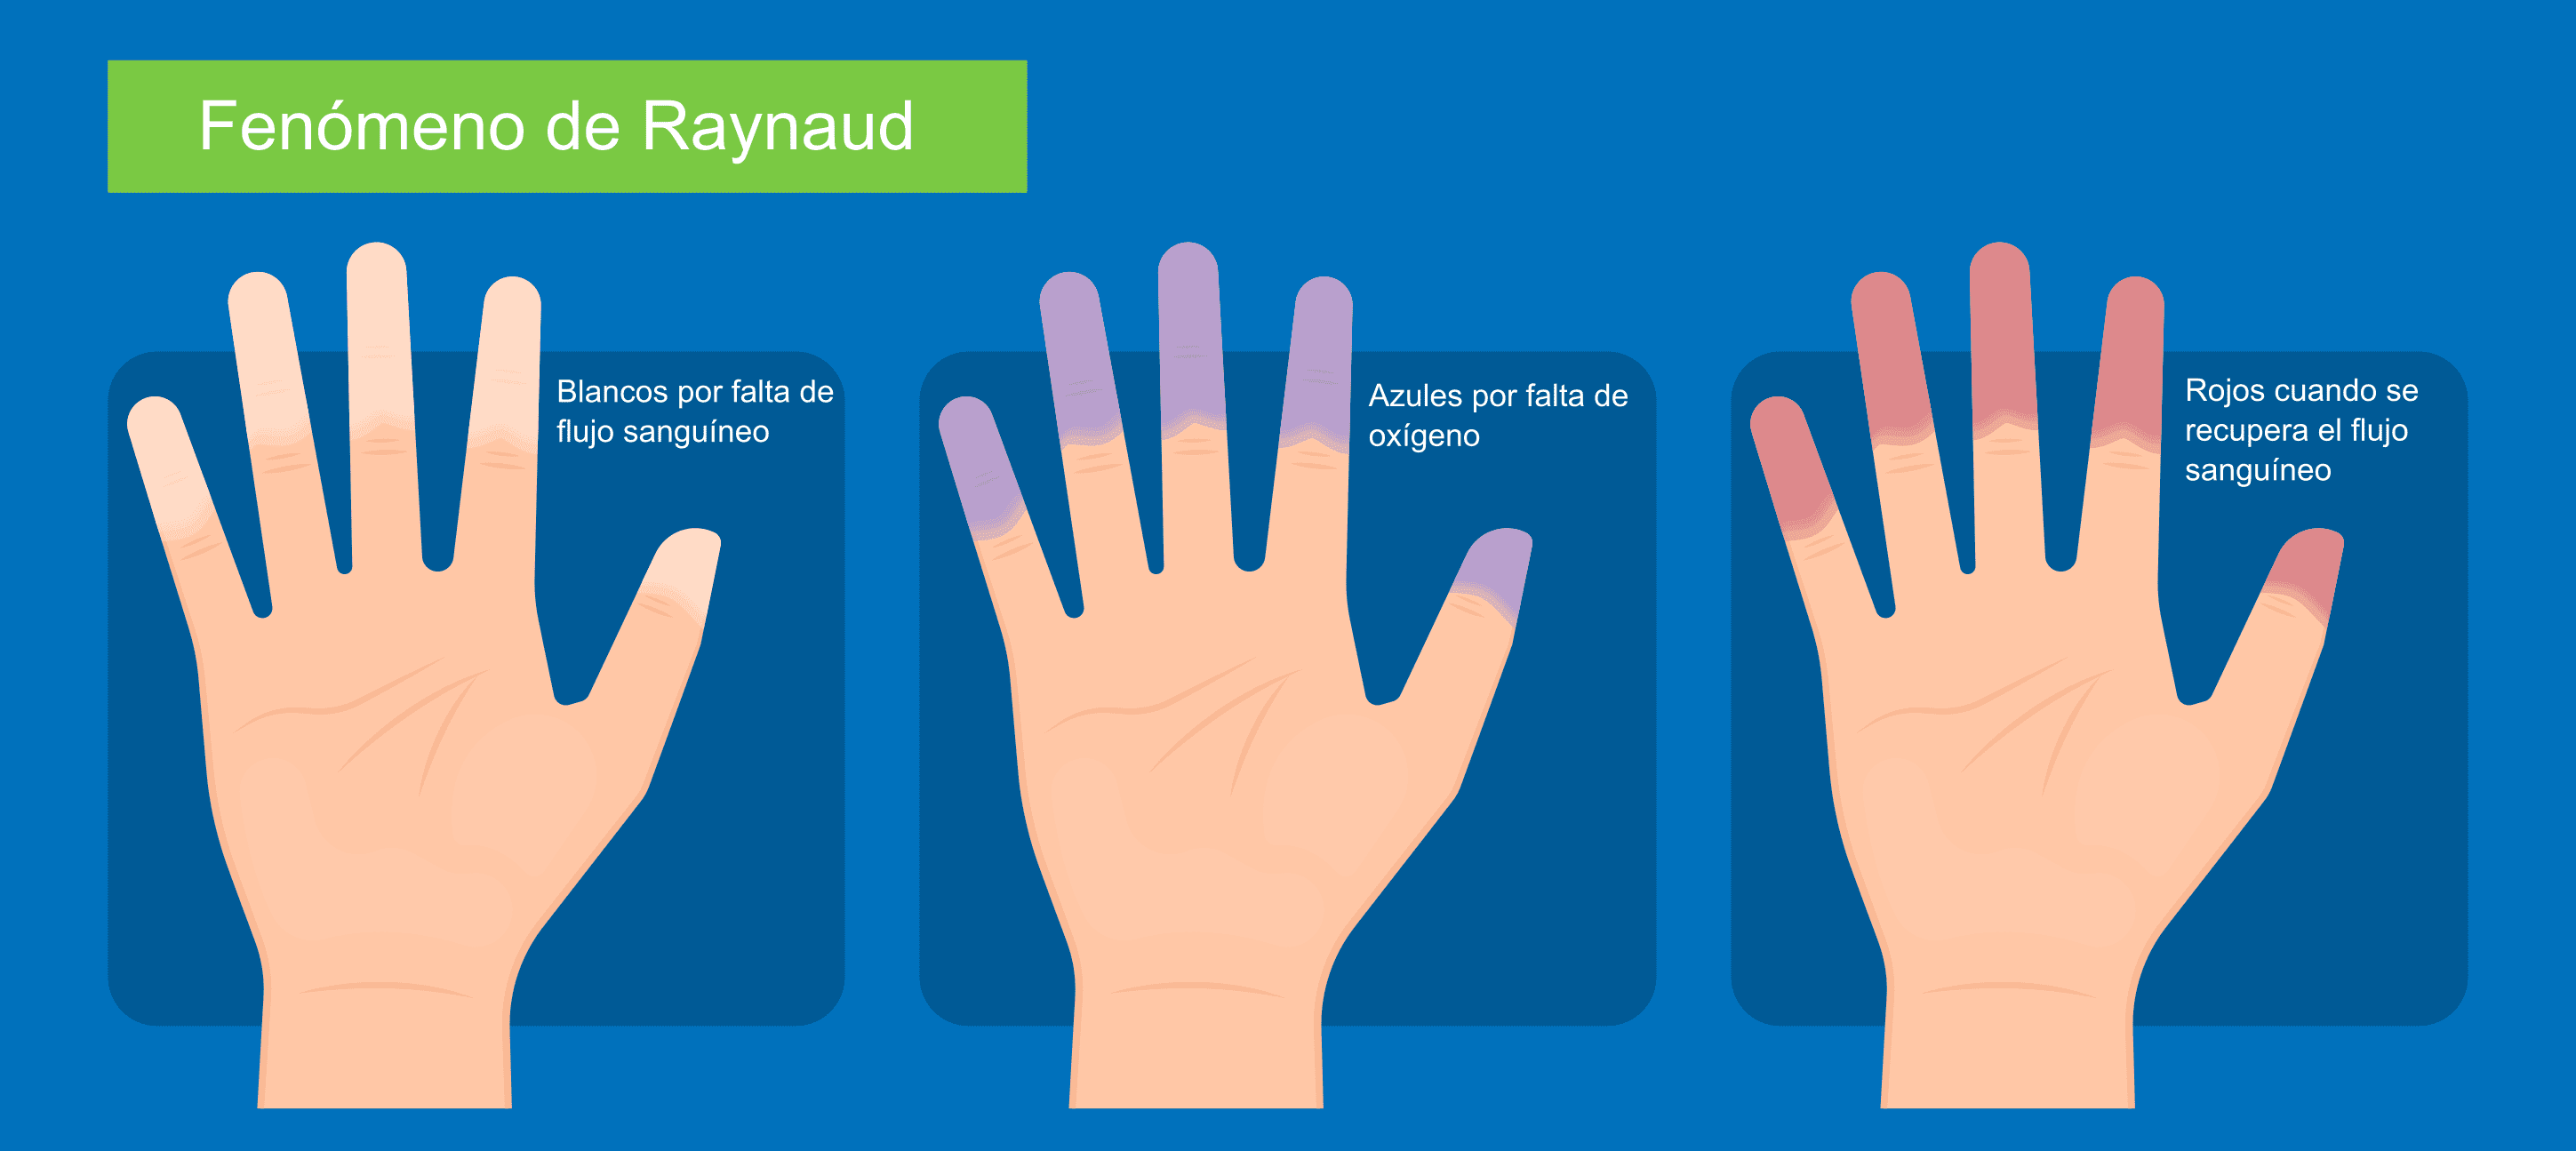 Fenómeno de Raynaud: cambios de color en los dedos